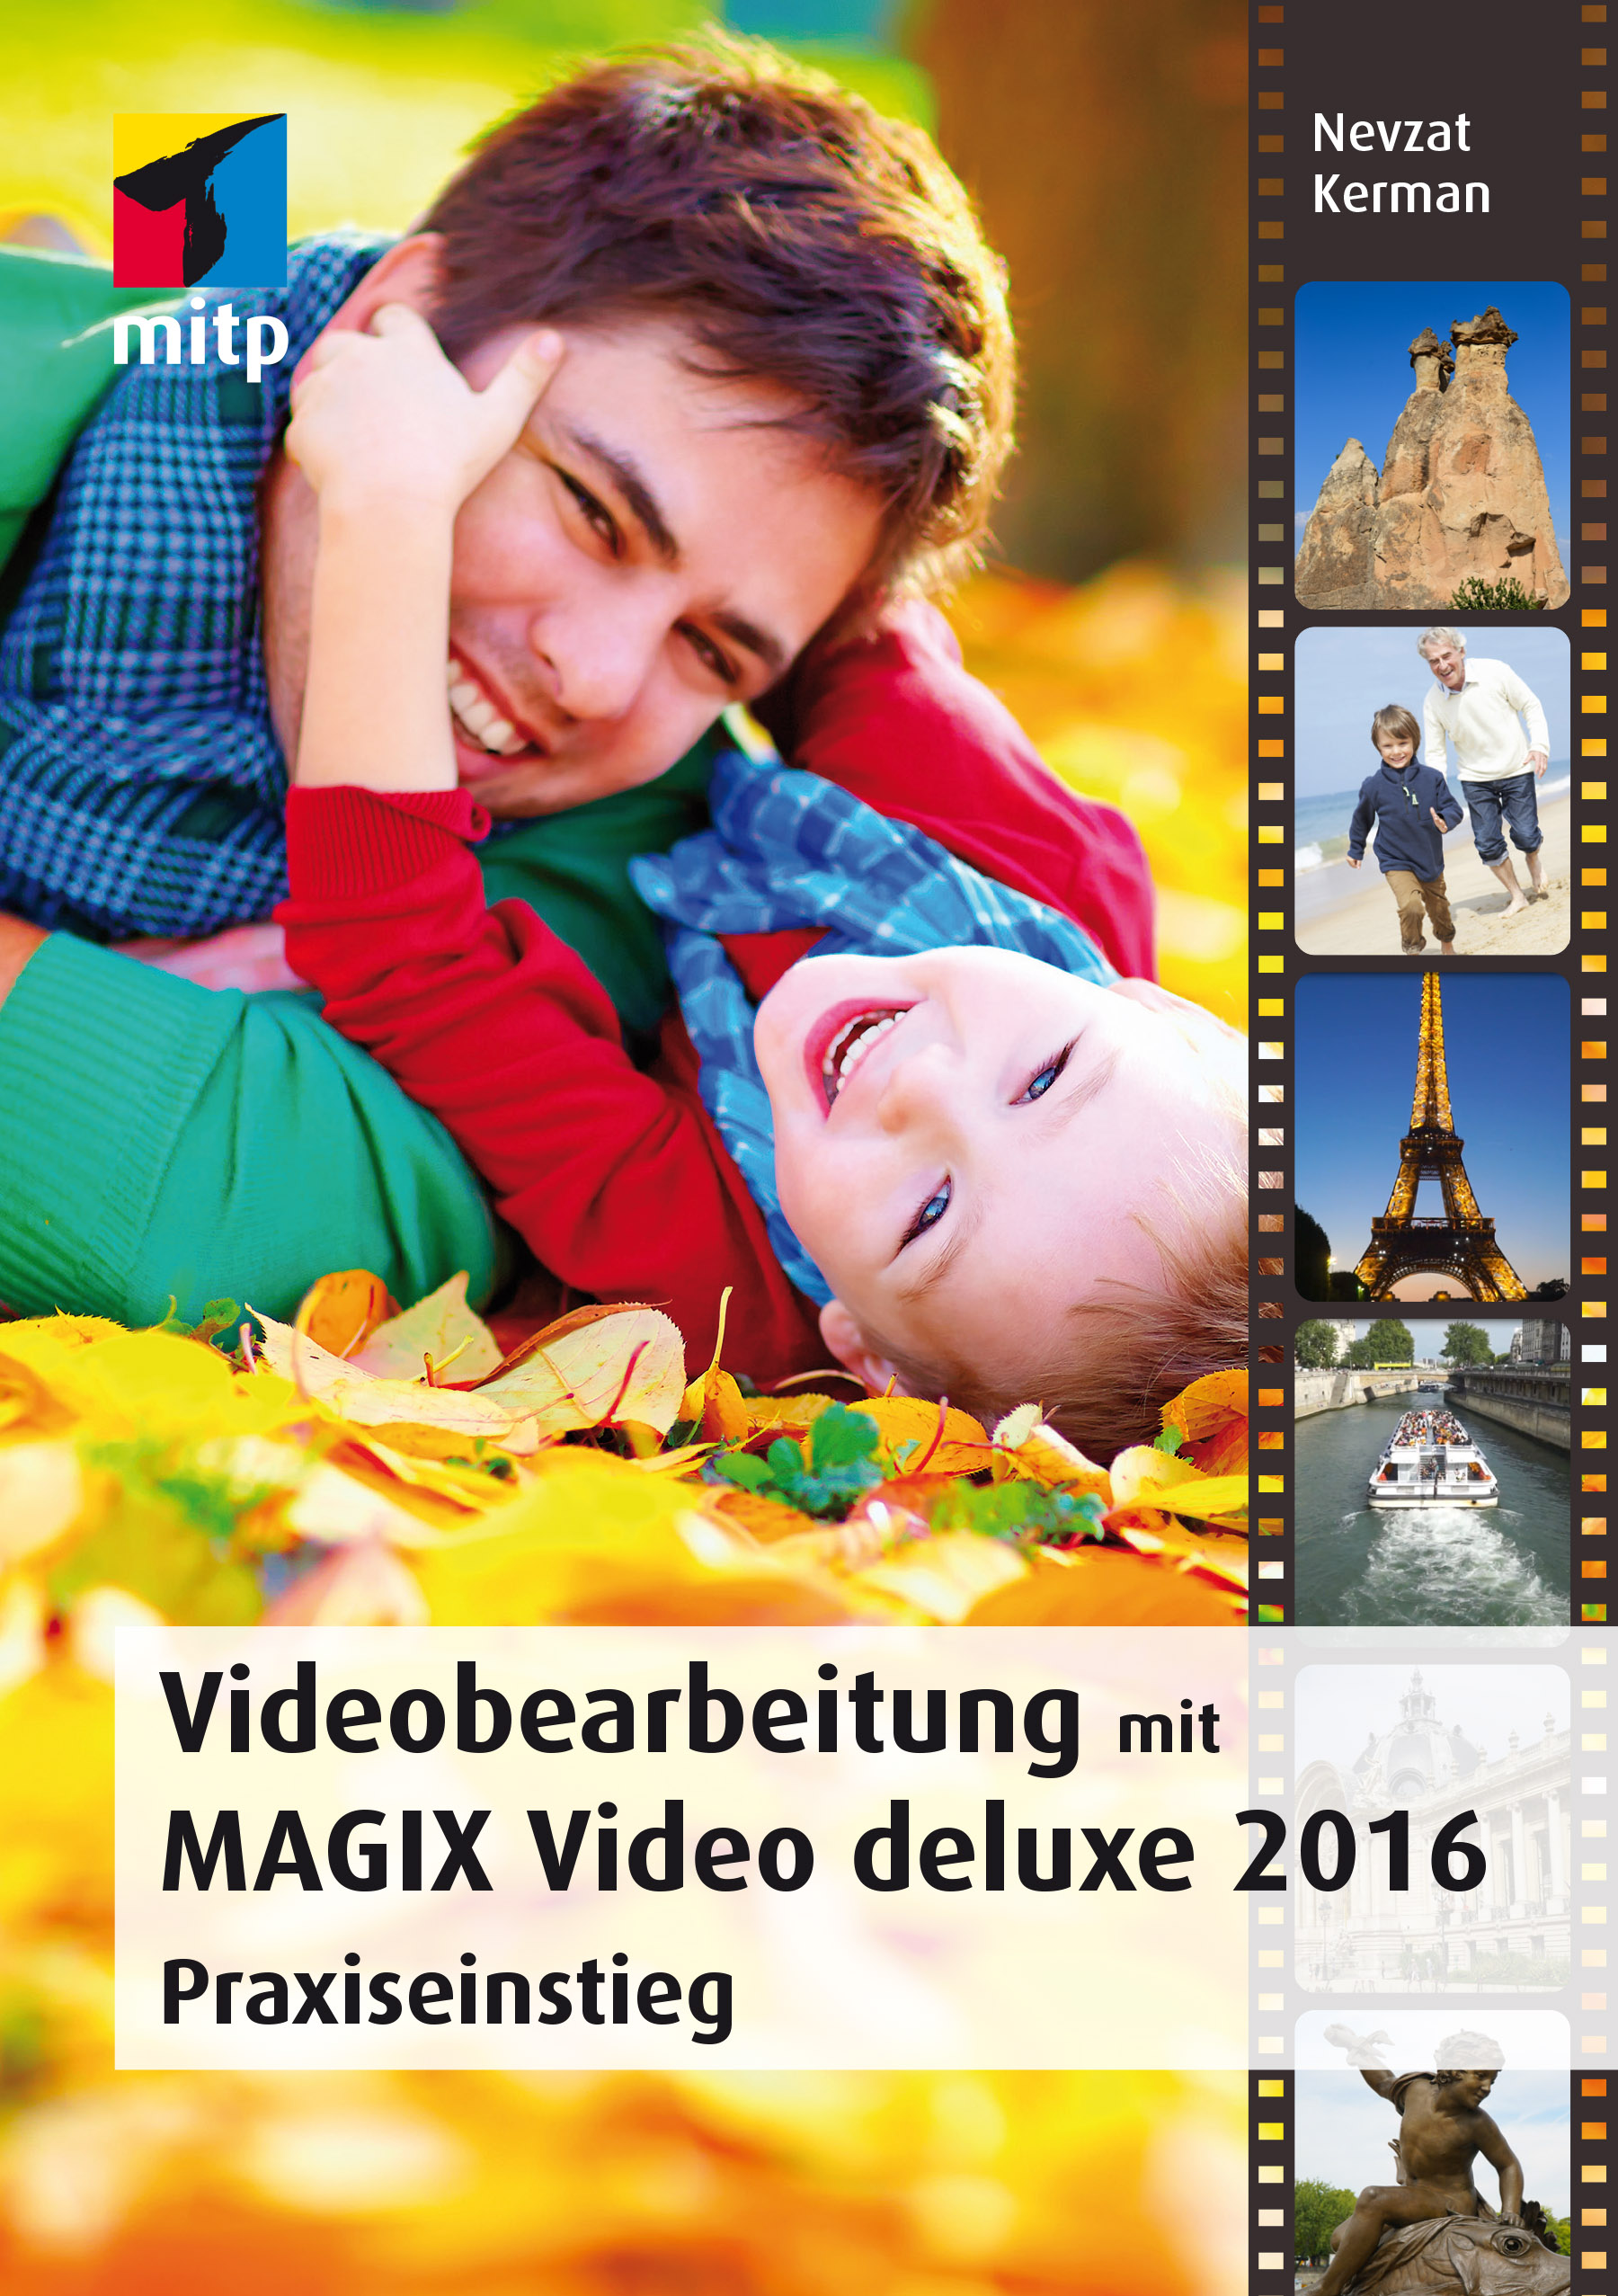 NEU Videobearbeitung mit MAGIX Video deluxe 2016 Nevzat Kerman 451728 - Bild 1 von 1